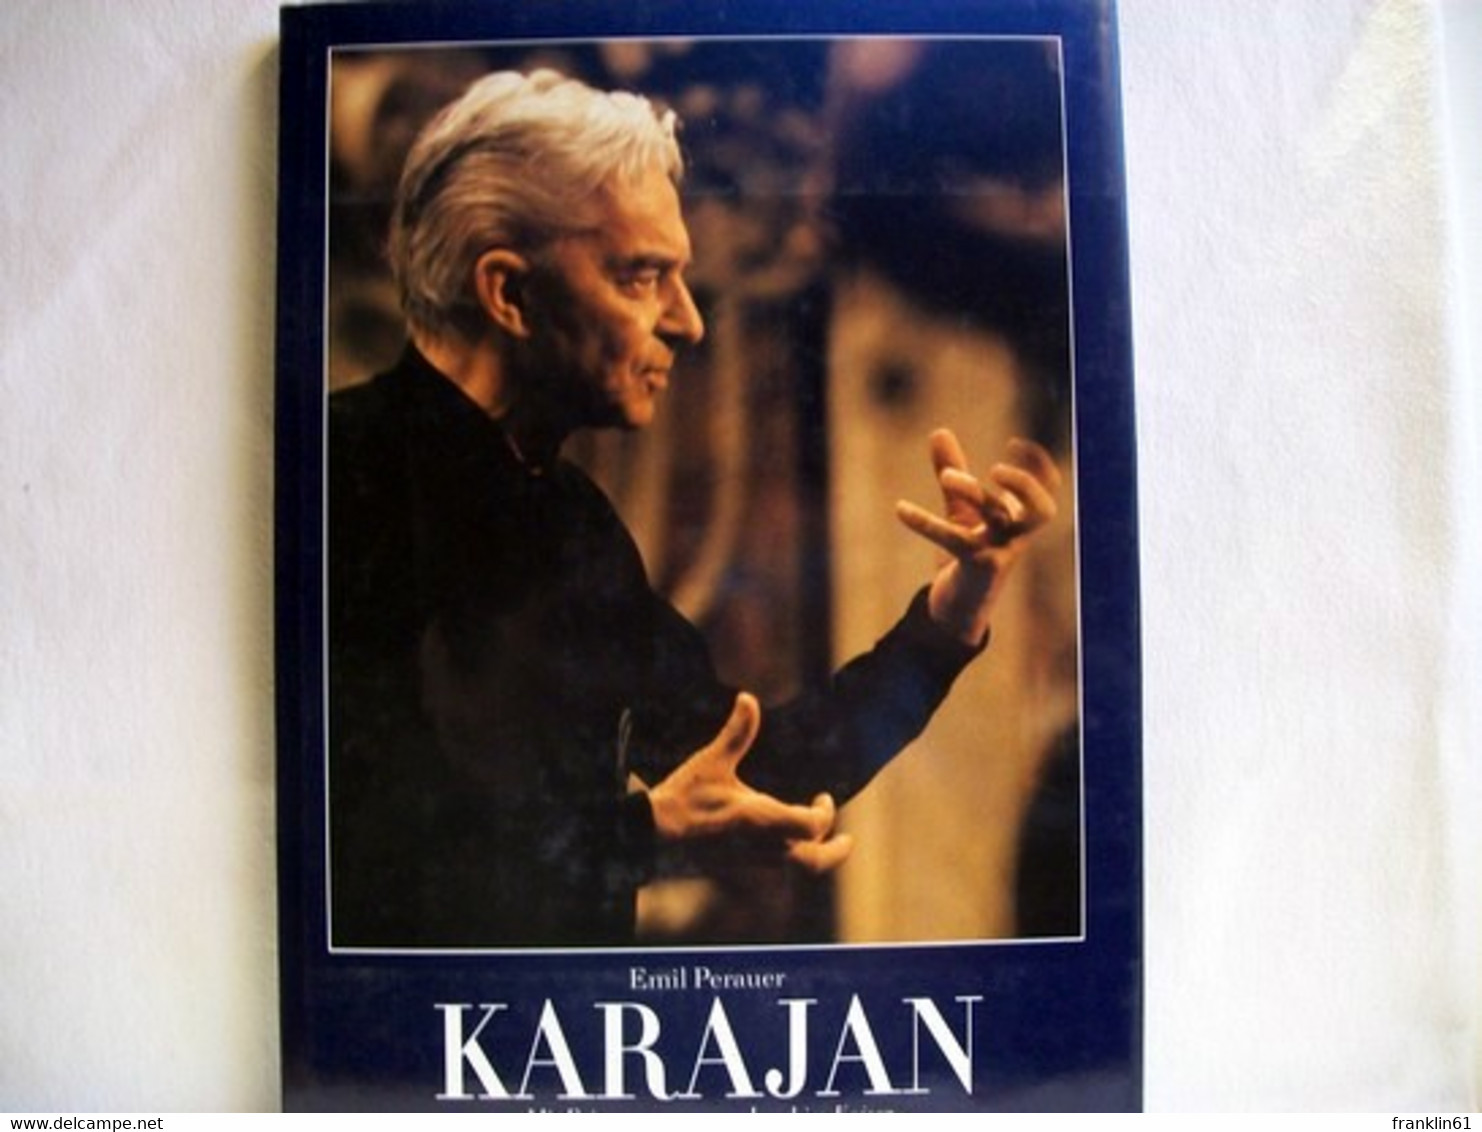 Karajan - Music